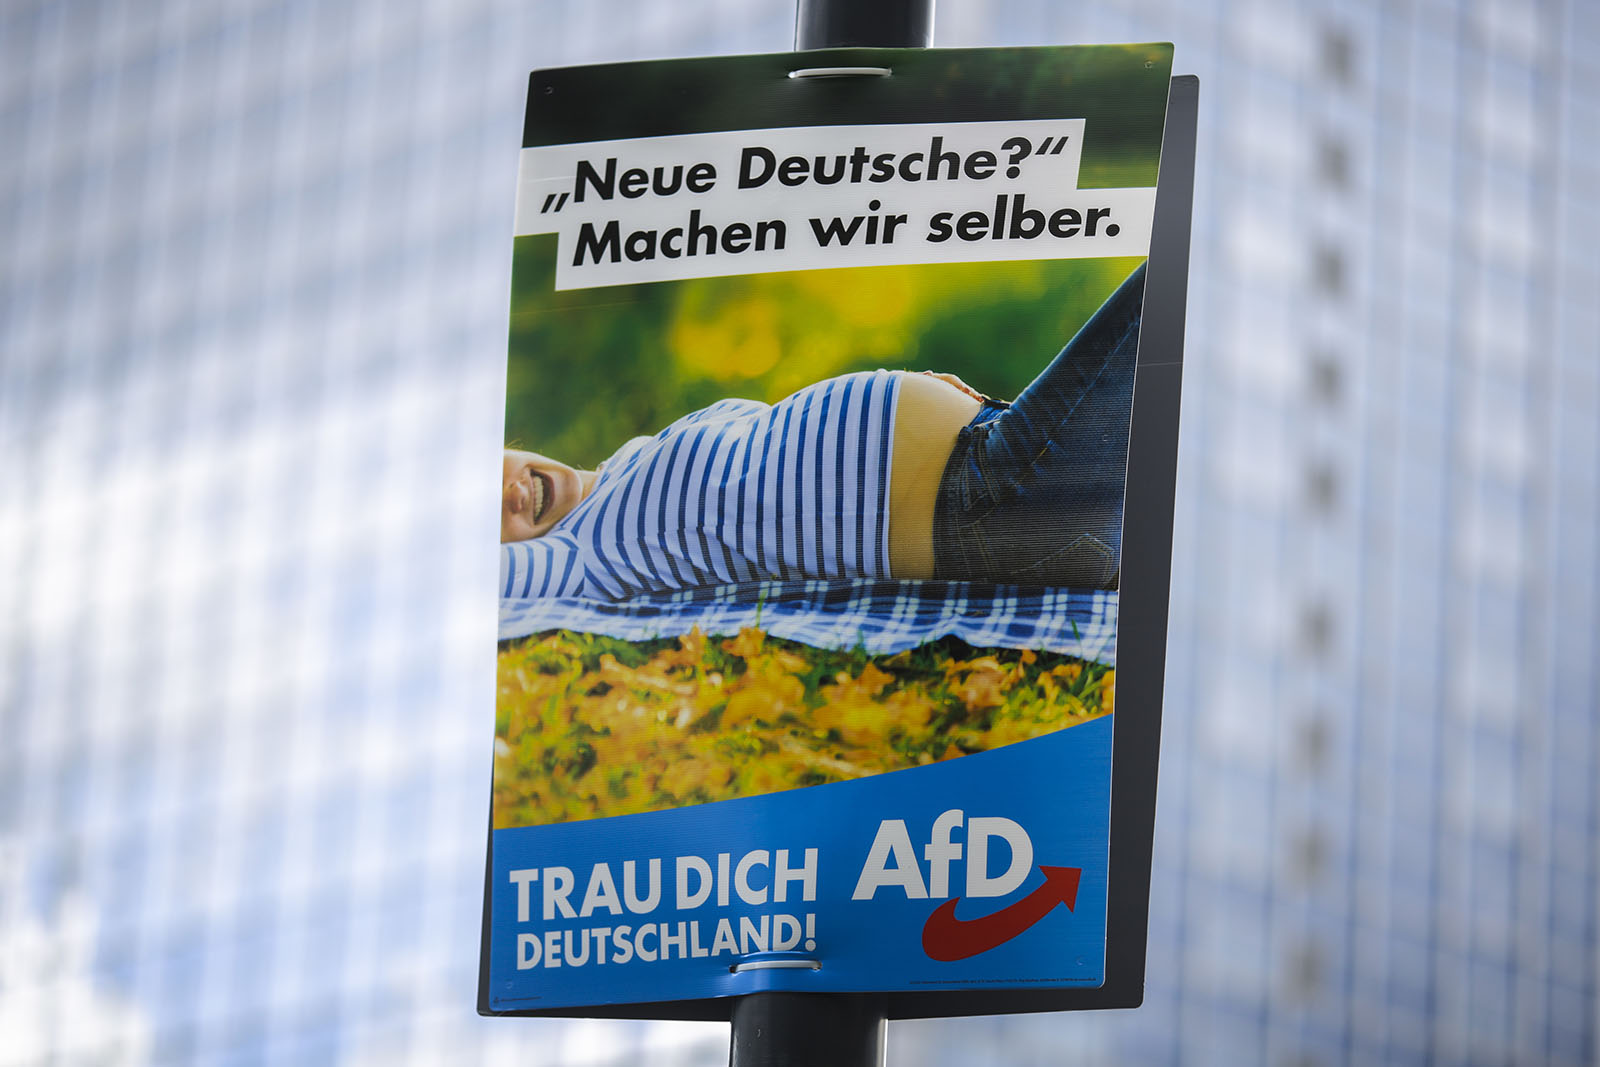 כרזה בחירות של מפלגת AFD אלטרנטיבה לגרמניה &quot;גרמנים חדשים?- אנחנו נכין אותם בעצמנו.&quot; בברלין 13 באוגוסט (צילום: AP Photo/Markus Schreiber)